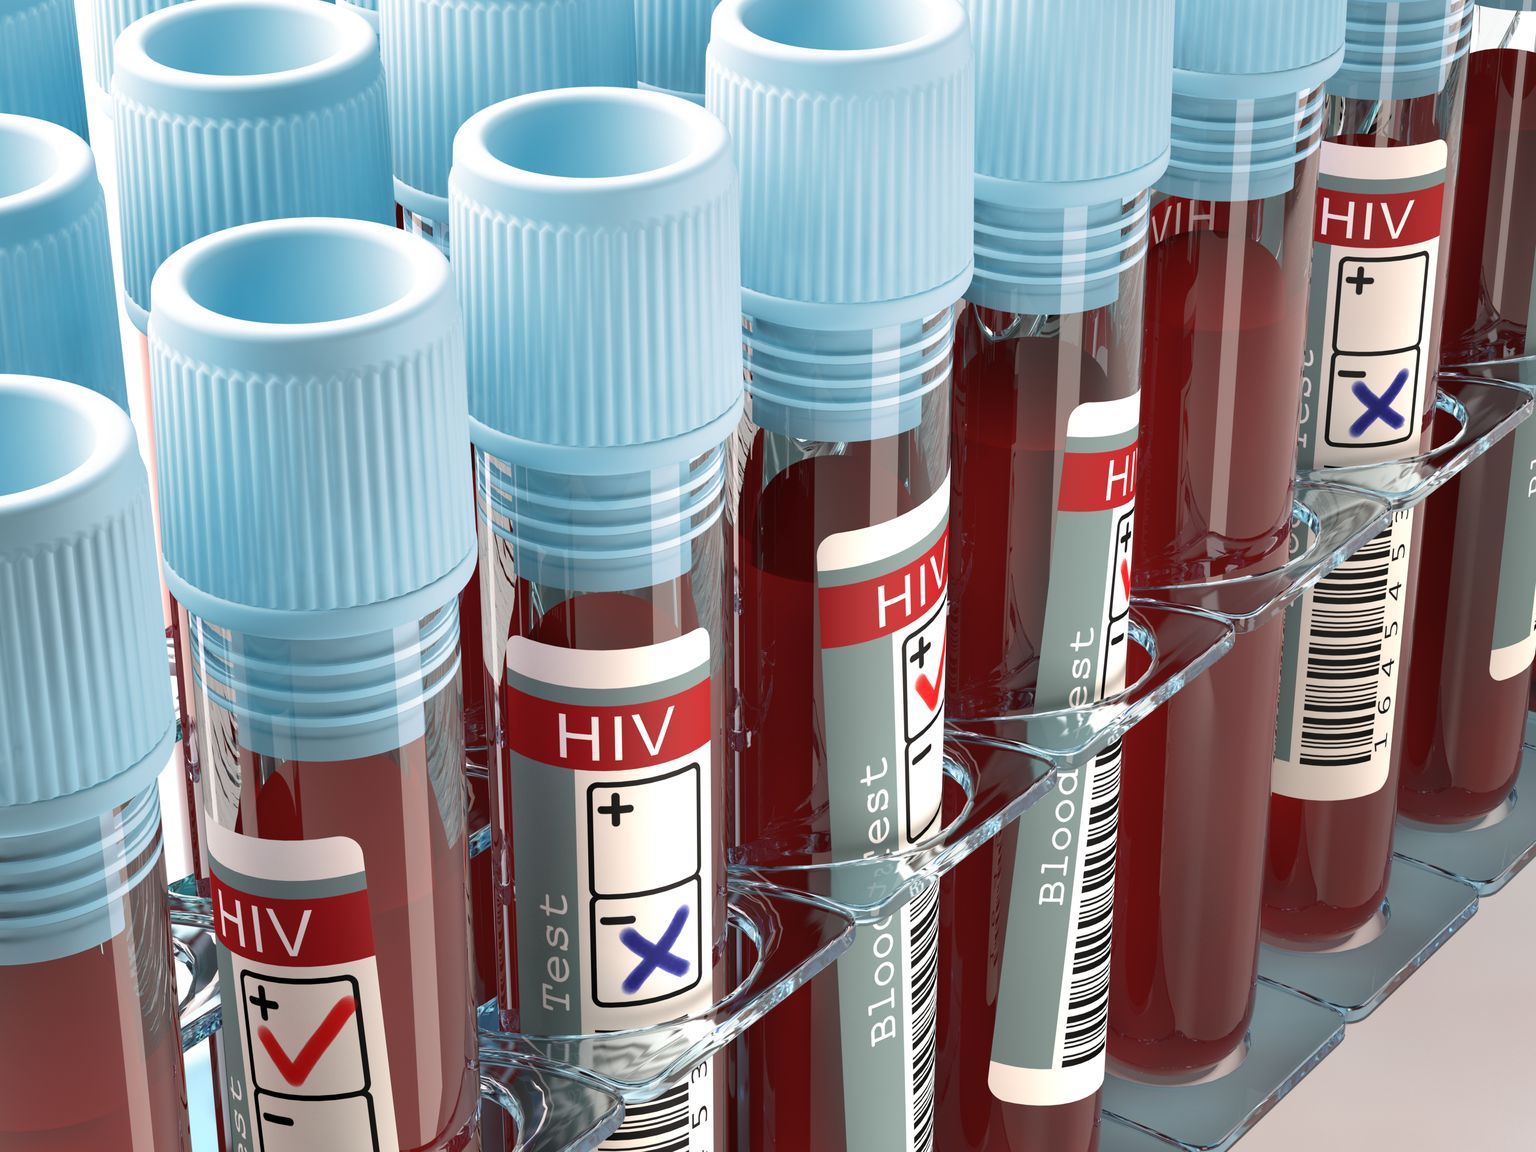 HIVi levimuse tuvastamiseks tuleks testida kõiki, kes on käitunud riskivalt või kelle seksuaalpartner on riskinud.